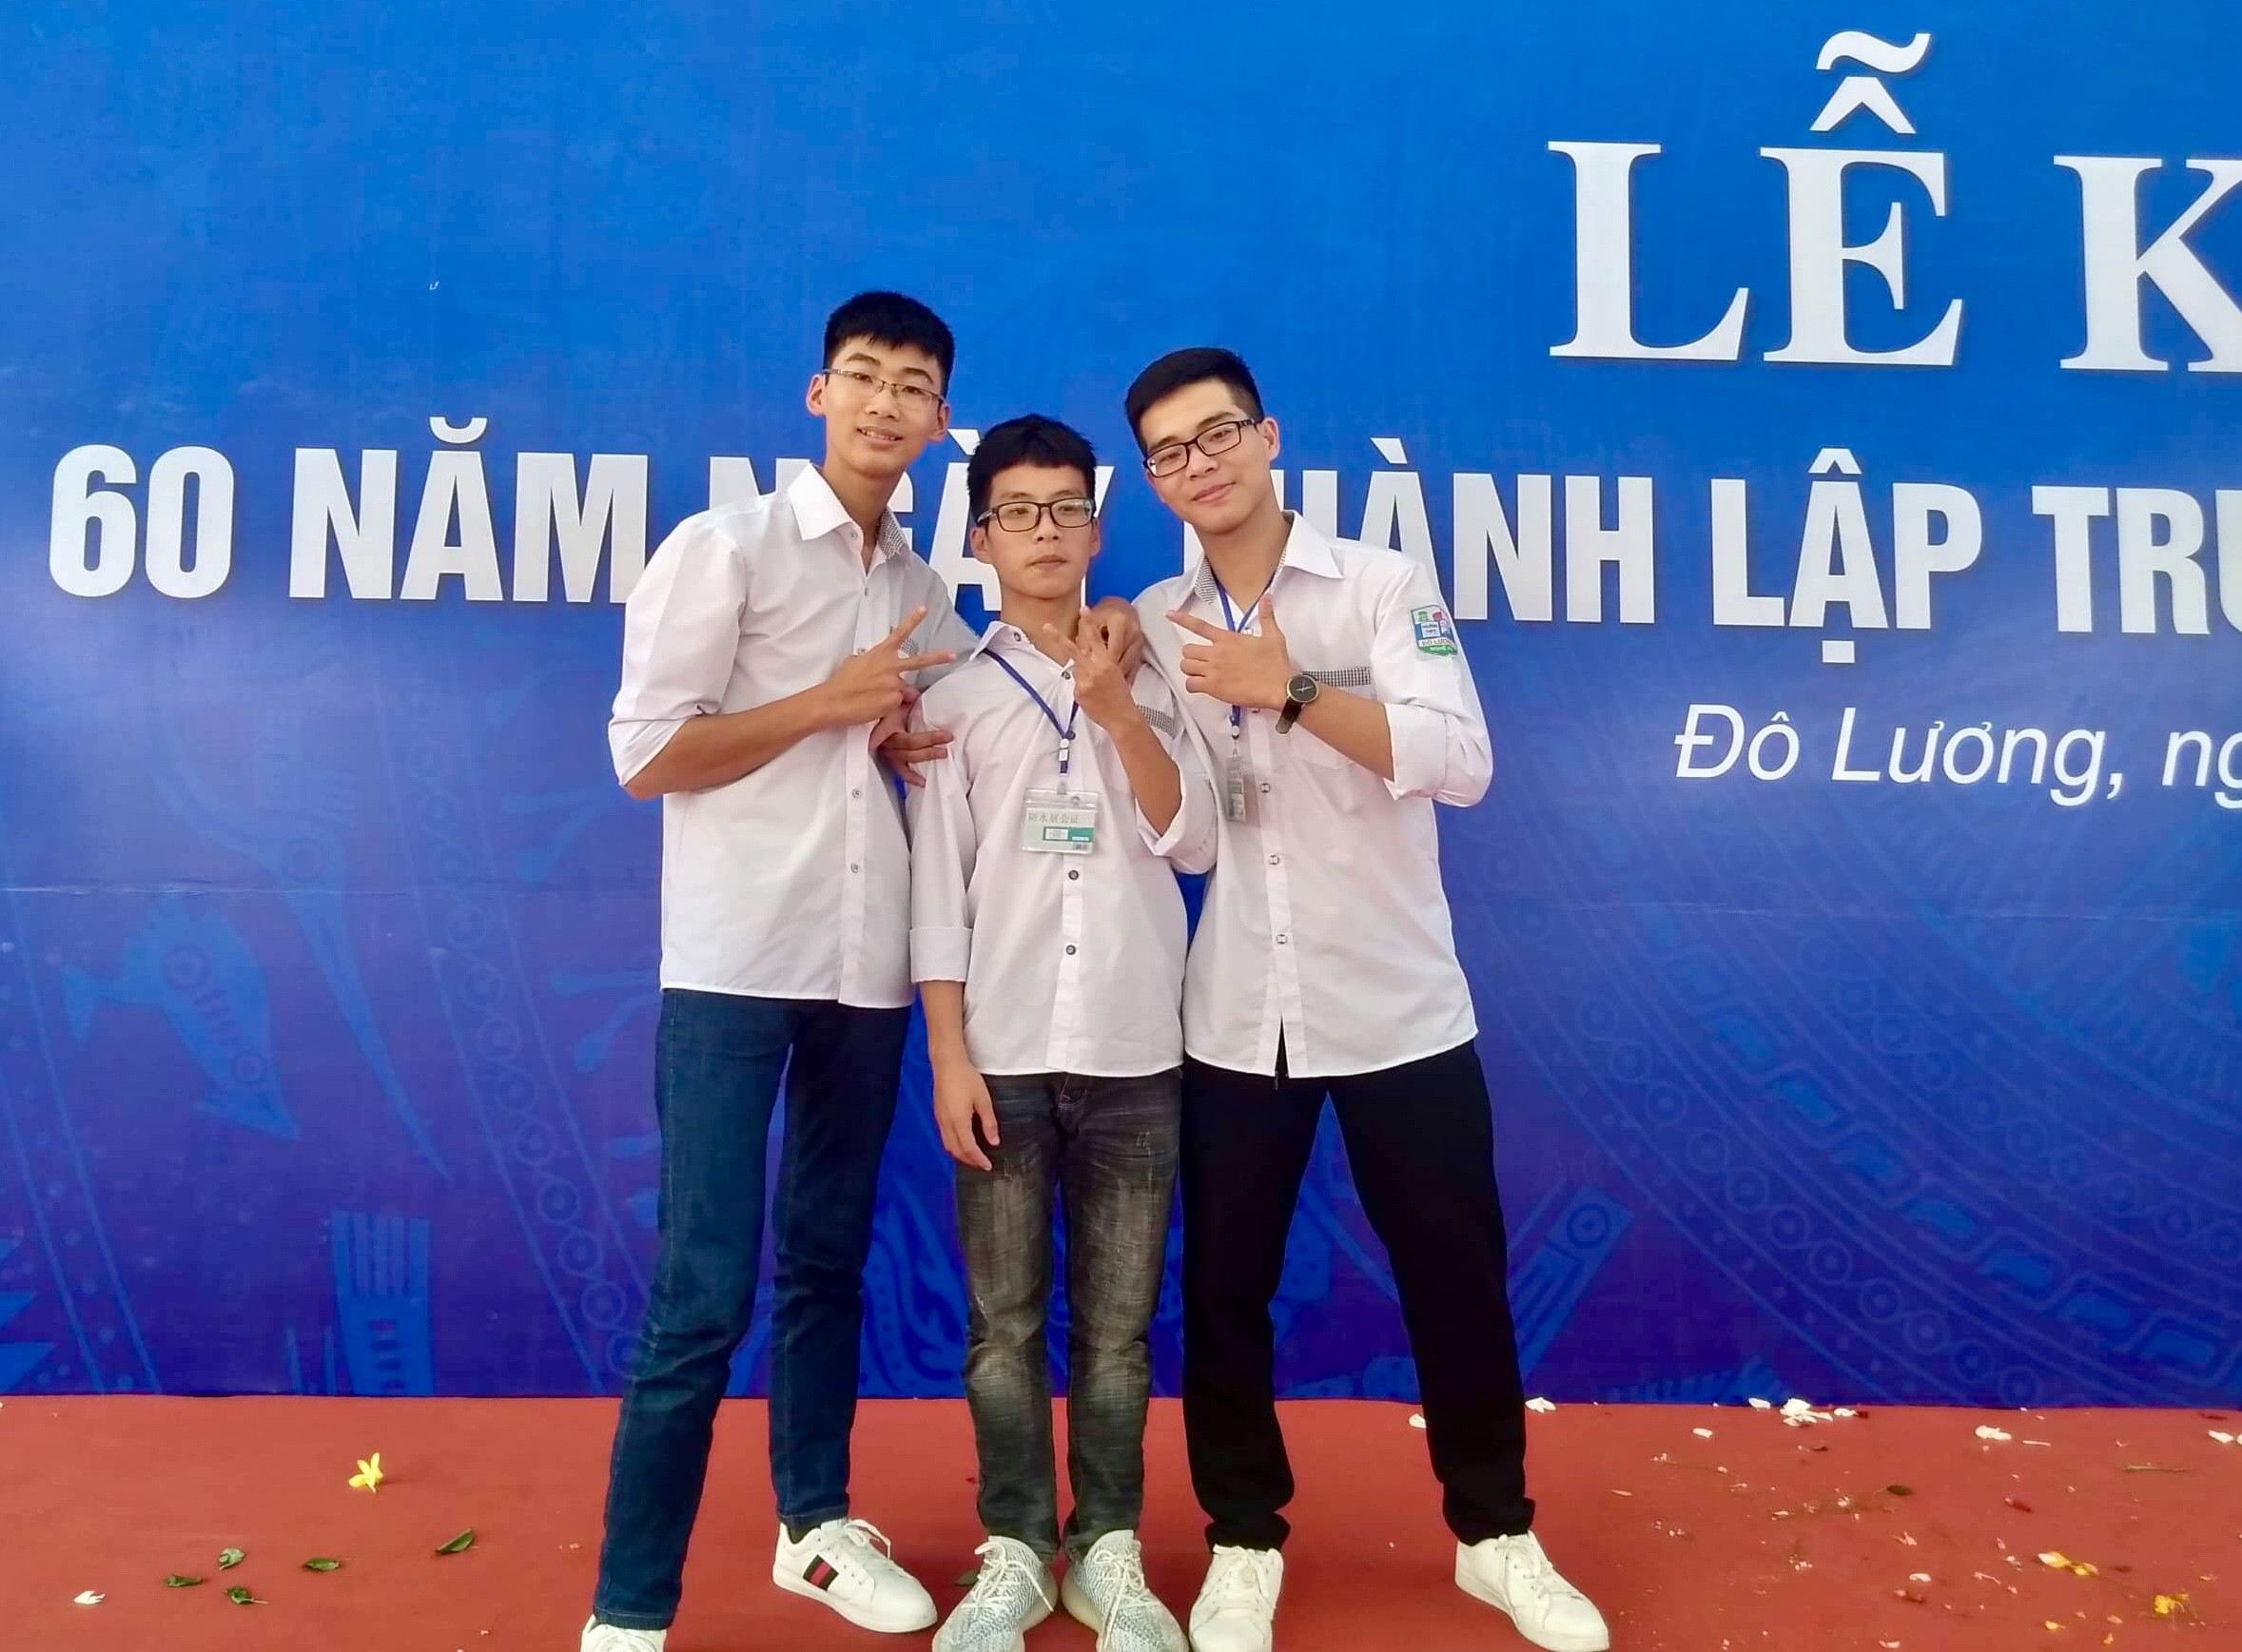 2.Phan Bảo Ngọc (đứng giữa) và 2 bạn học có số điểm thi cao tại kỳ thi tốt nghiệp THPT